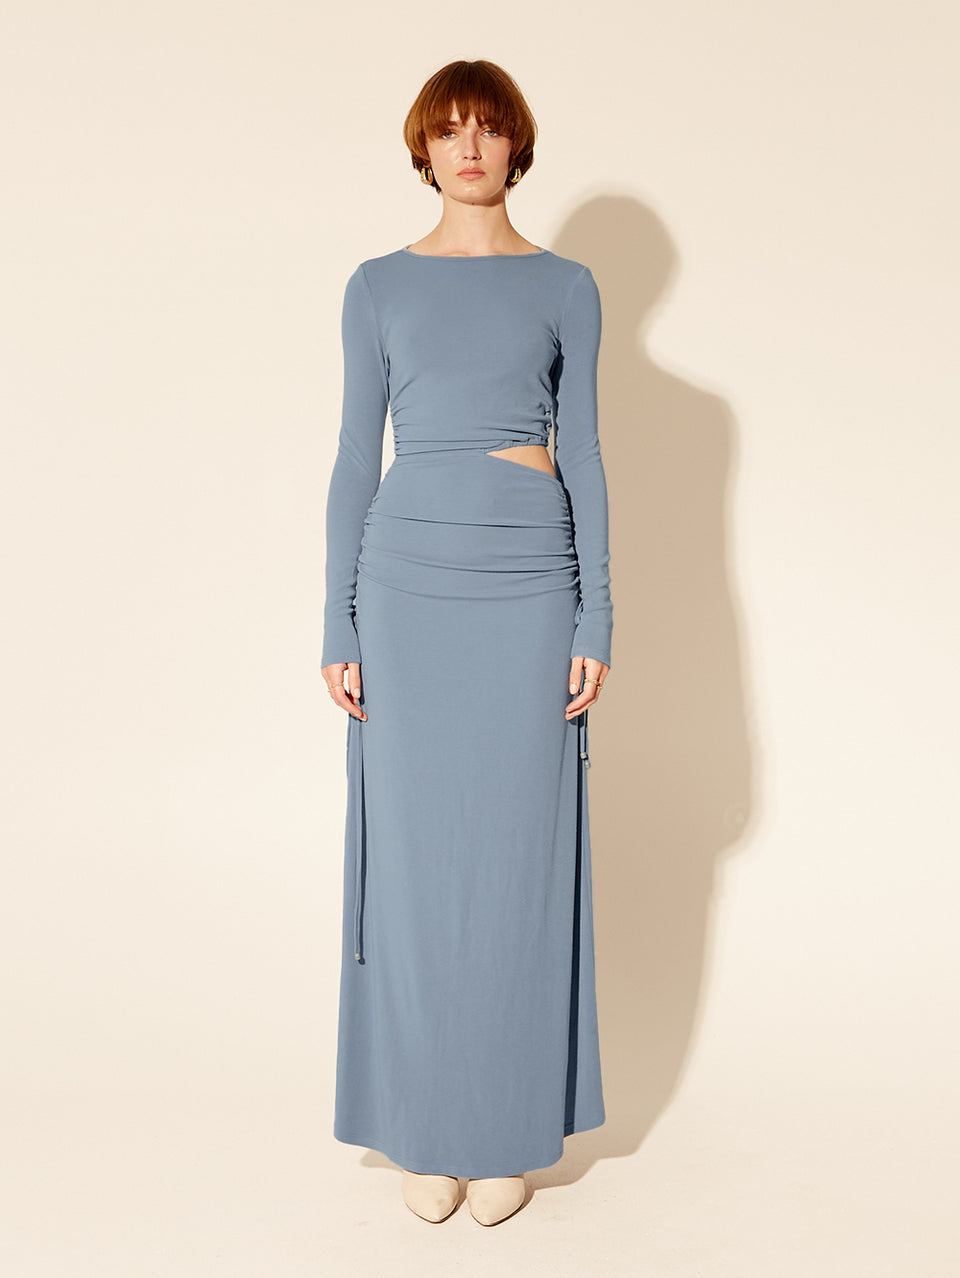 Vanessa Knit Midi Dress KIVARI | Model wears blue midi dress